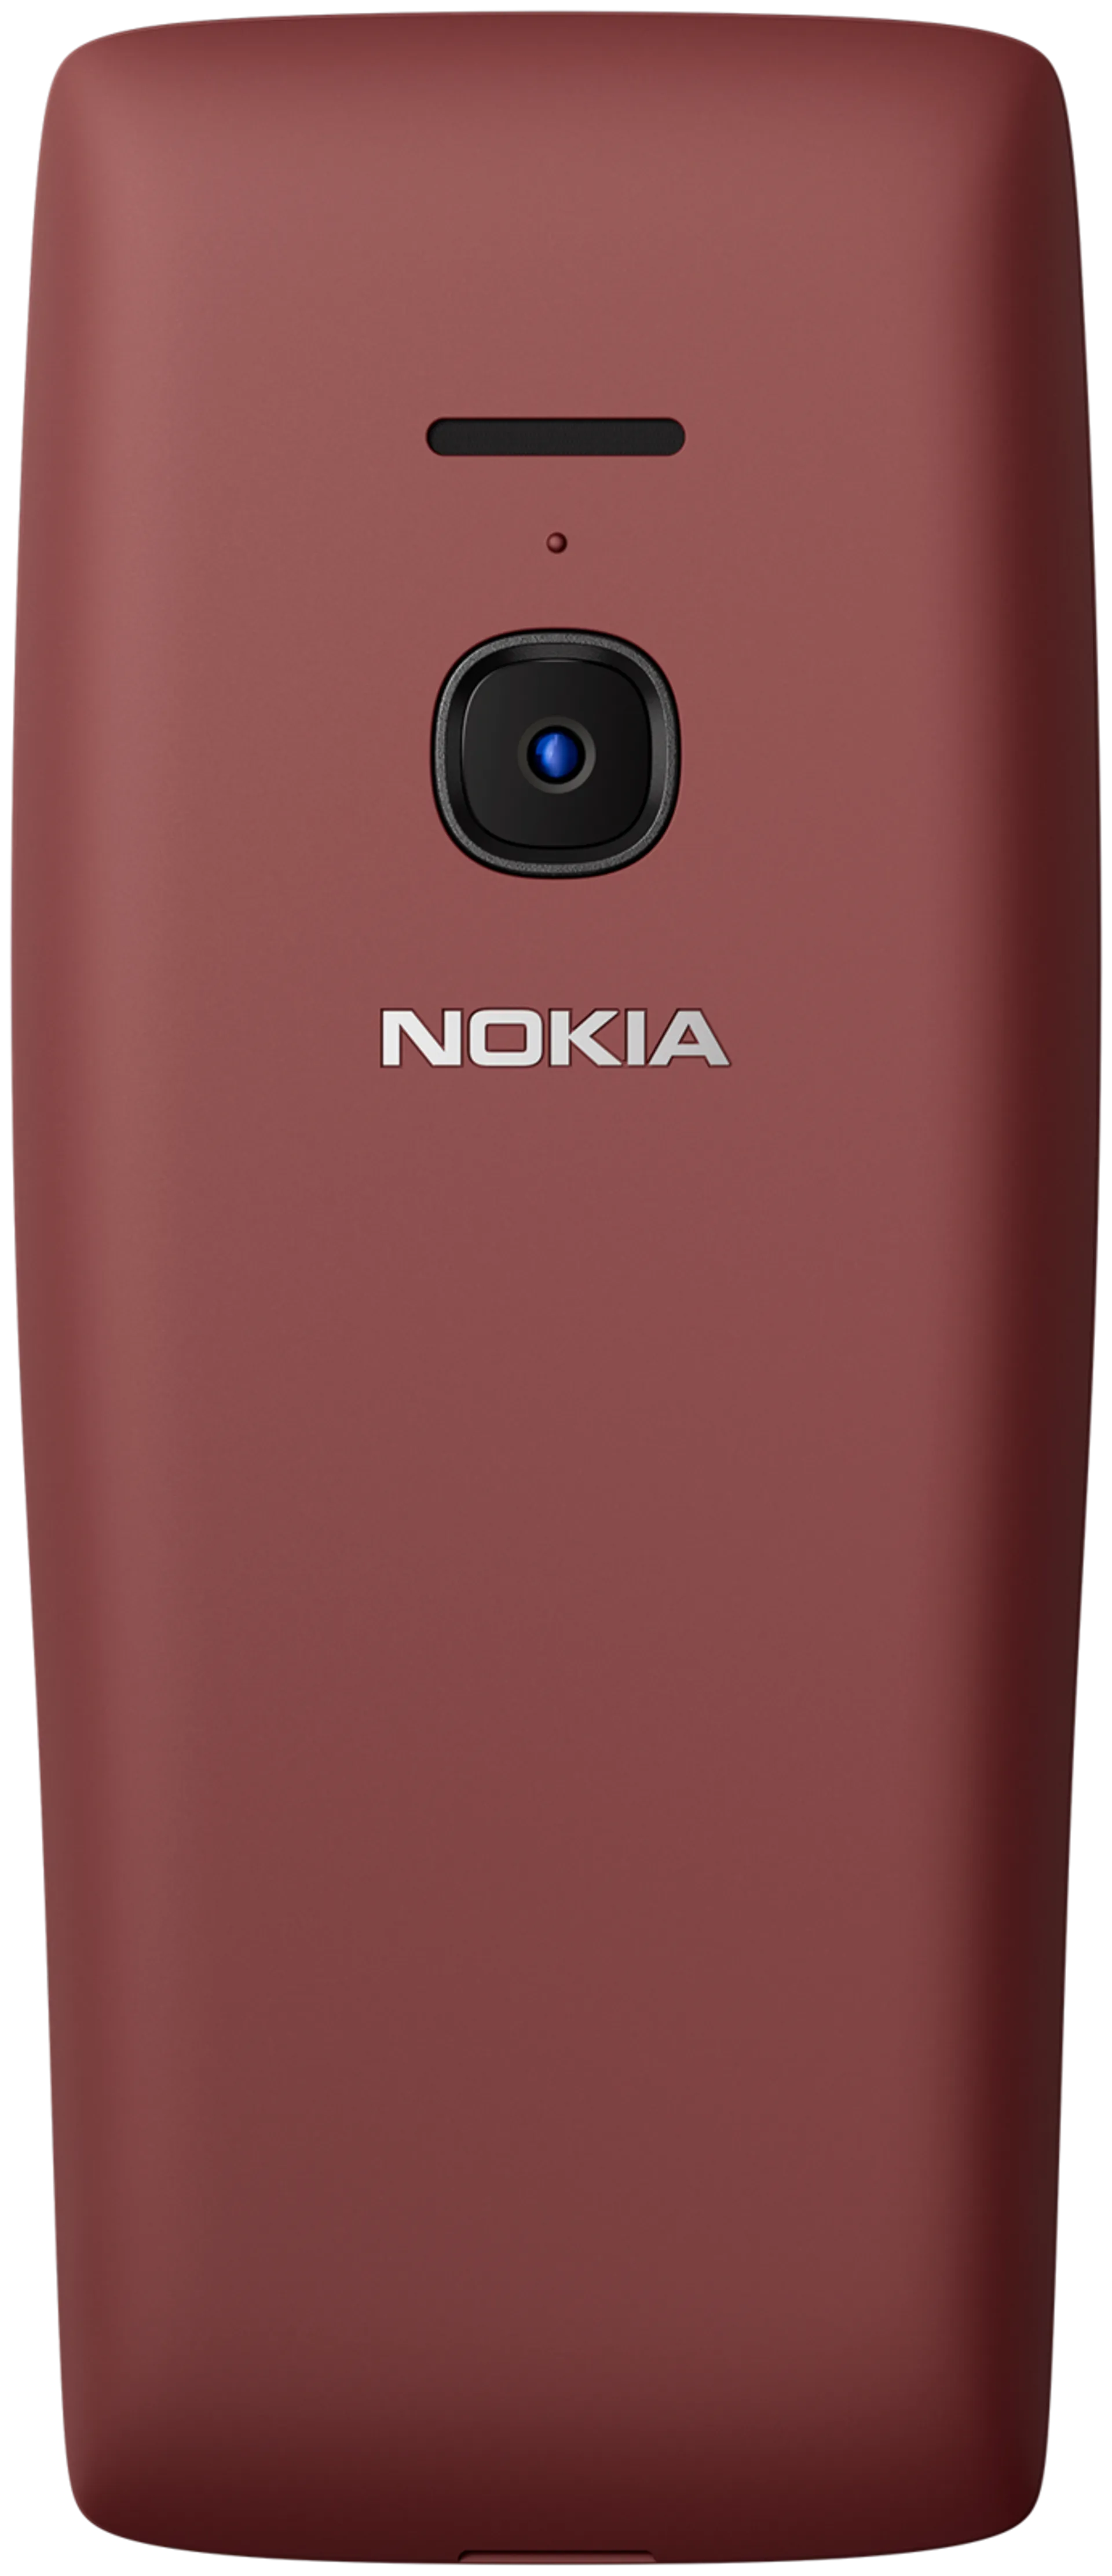 Nokia 8210 4G punainen peruspuhelin - 2